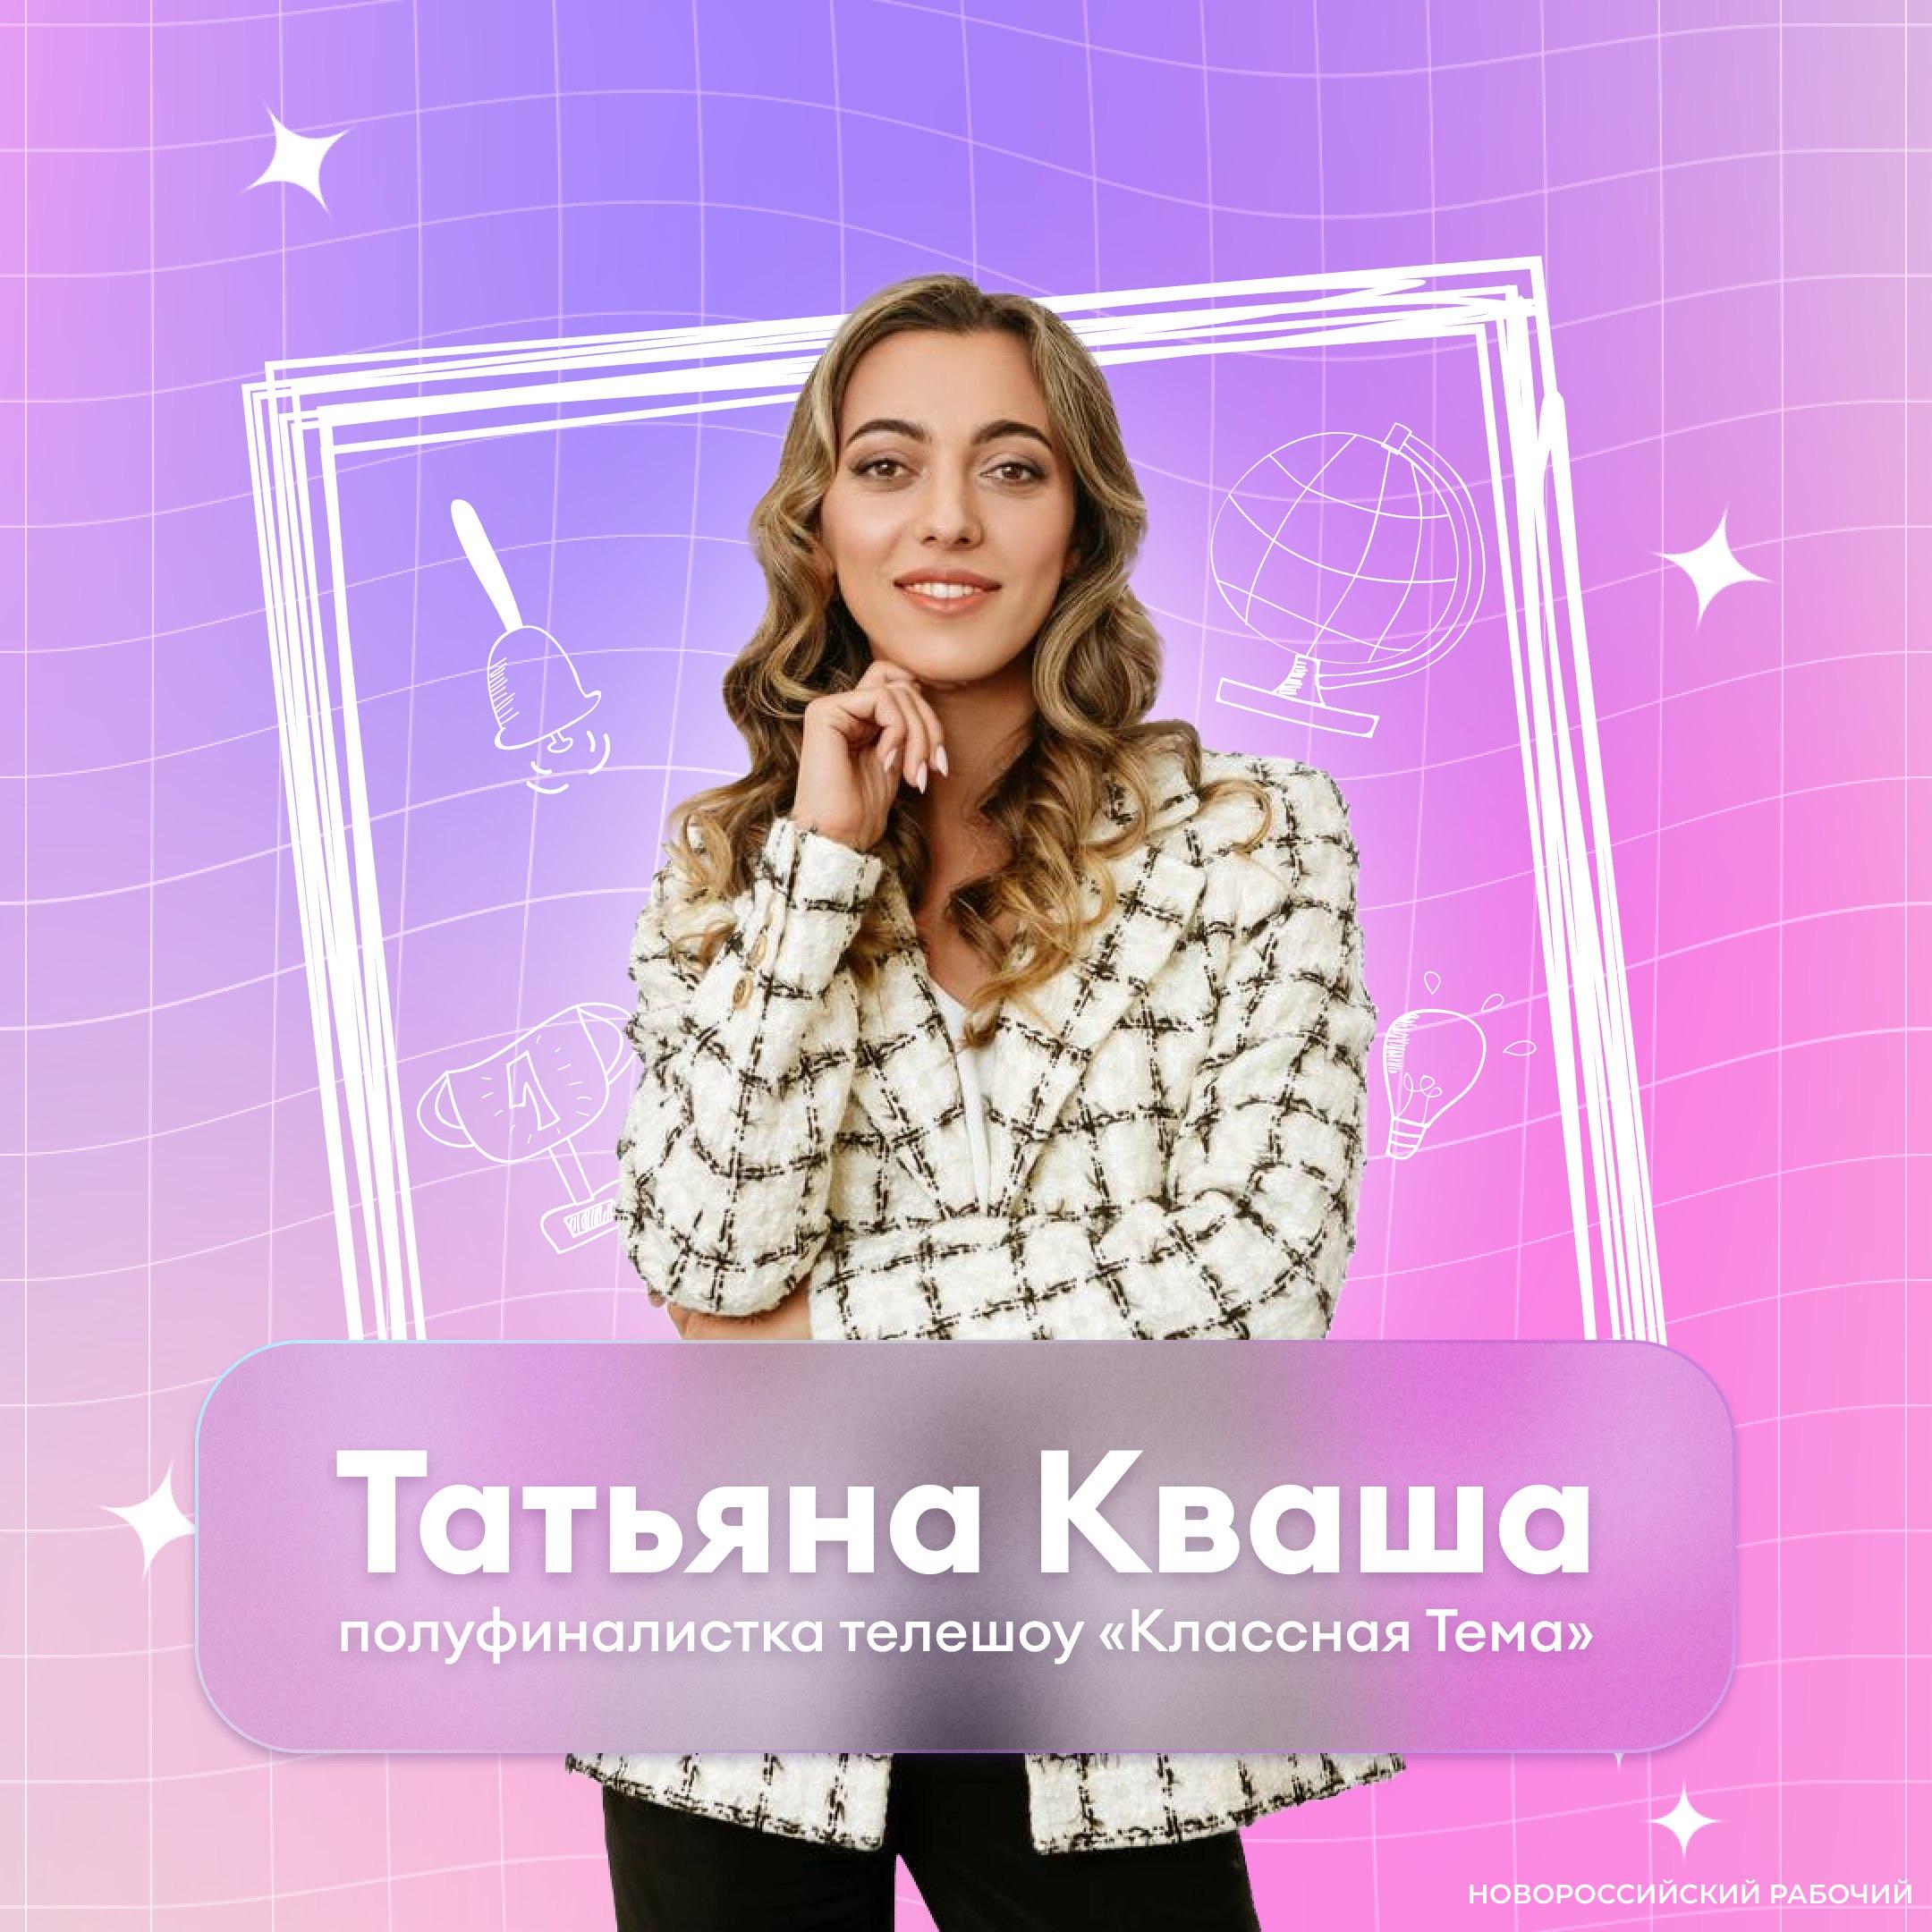 Вы уже проголосовали за учительницу из Новороссийска, которая может стать телеведущей?